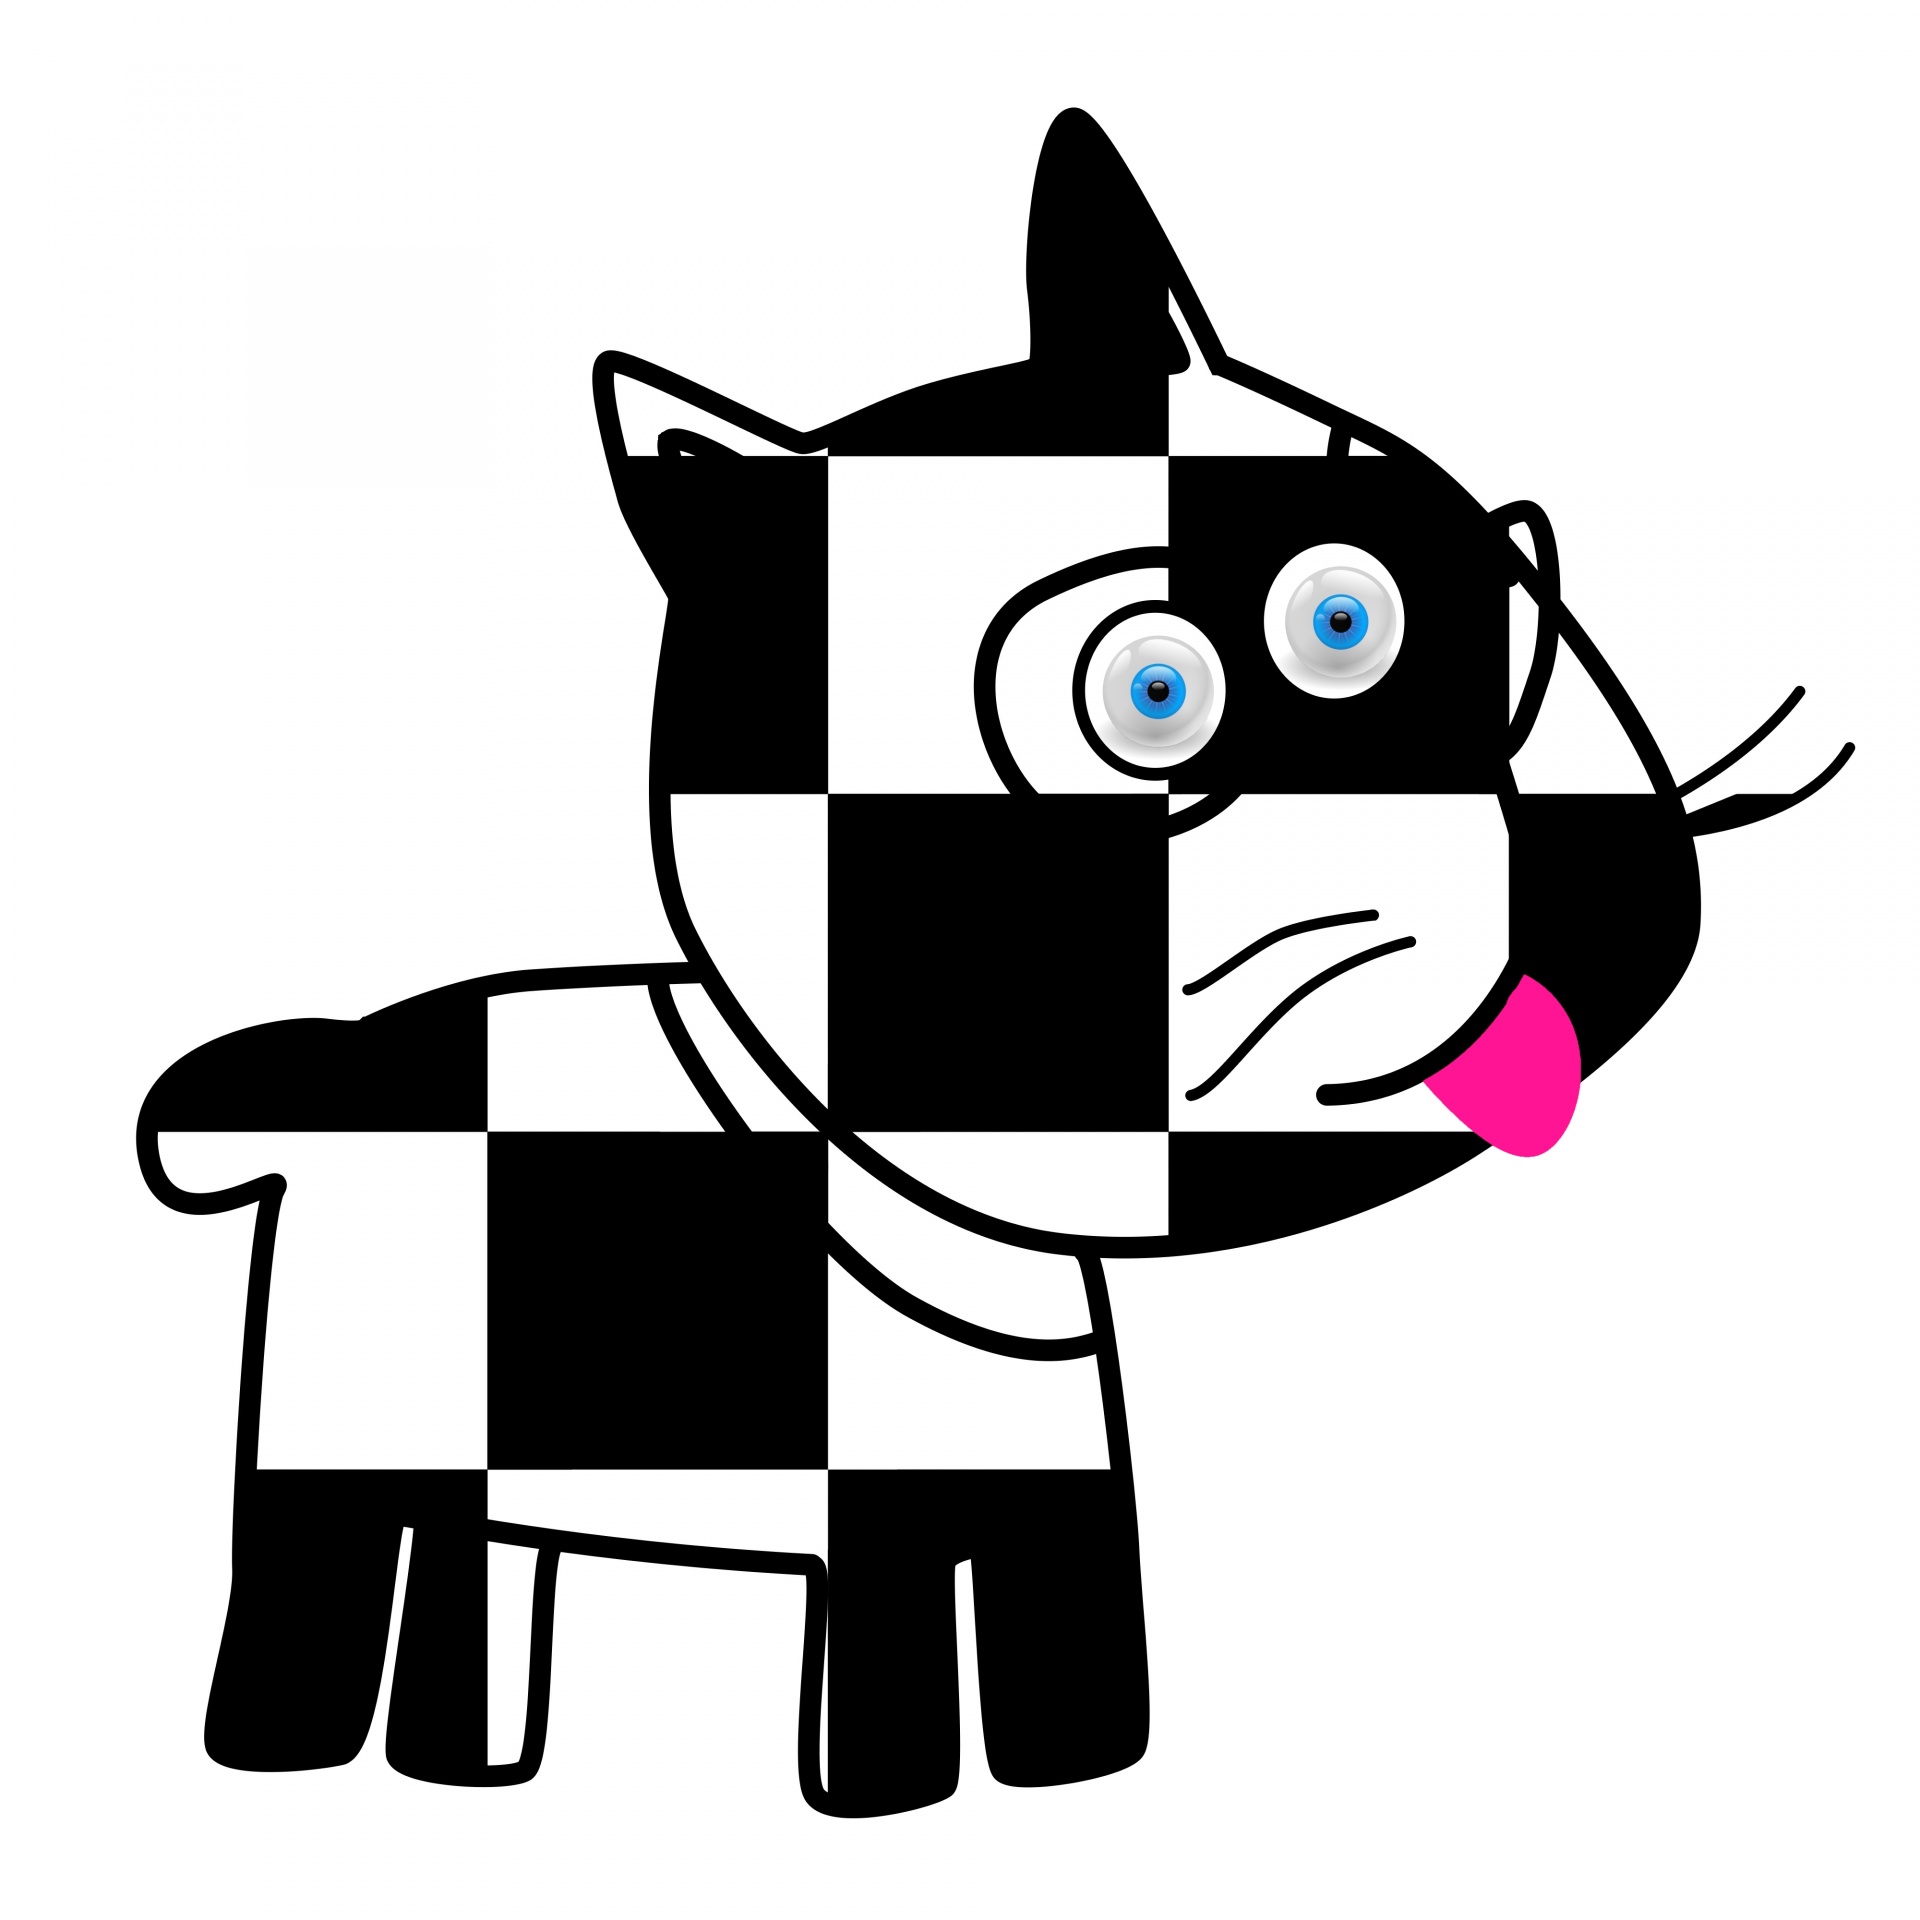 Checker Dog